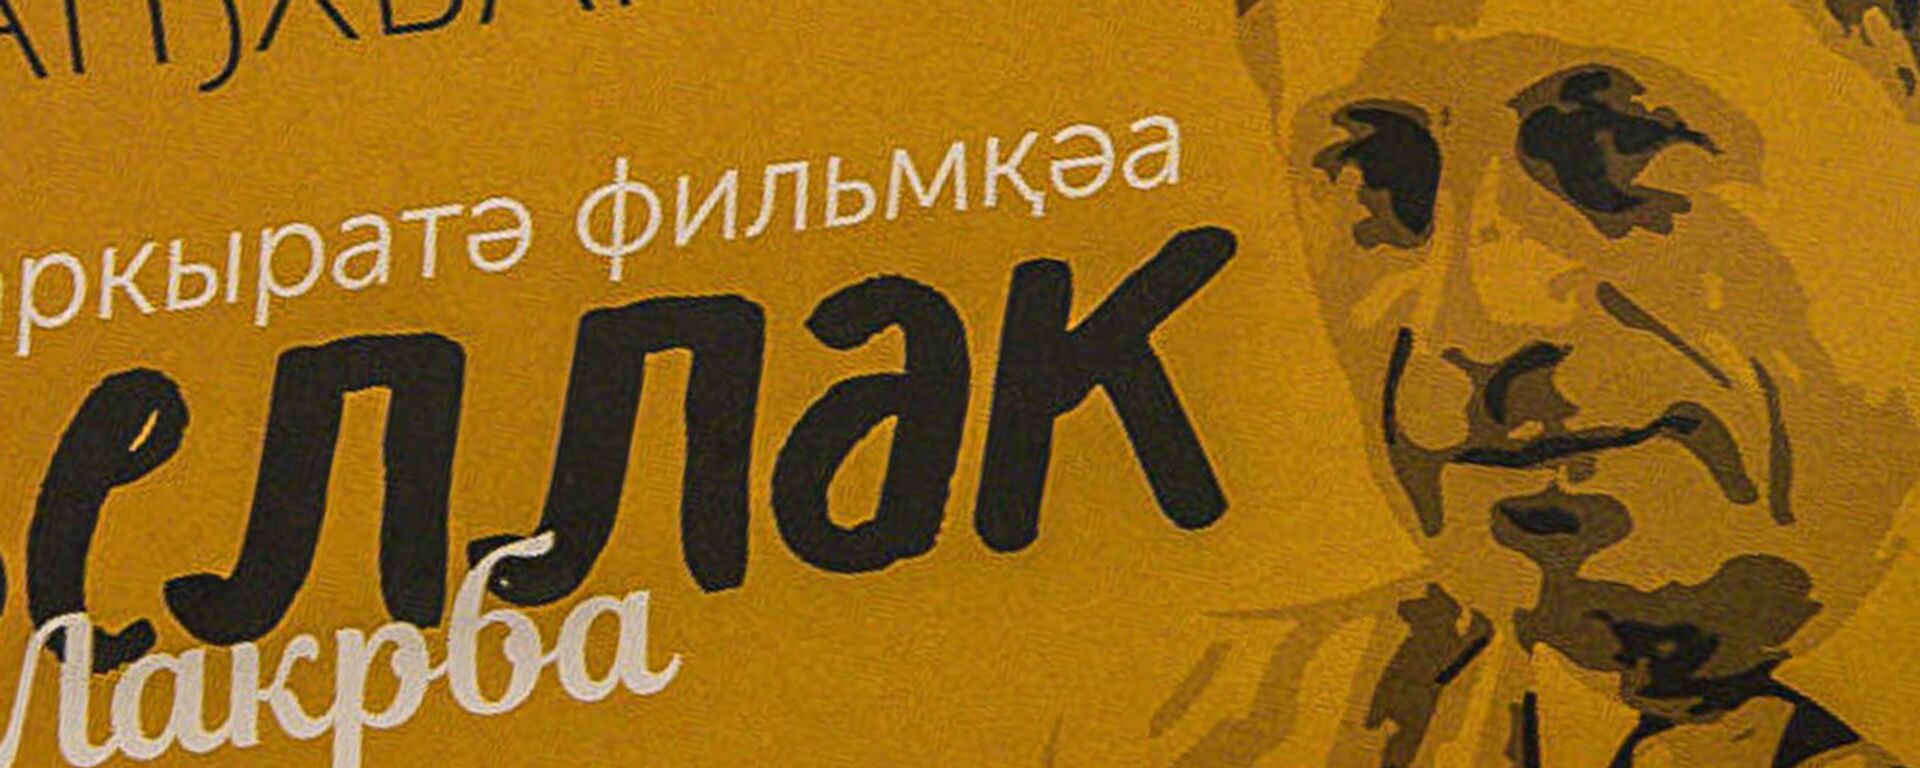 7 новелл - Sputnik Аҧсны, 1920, 08.03.2018